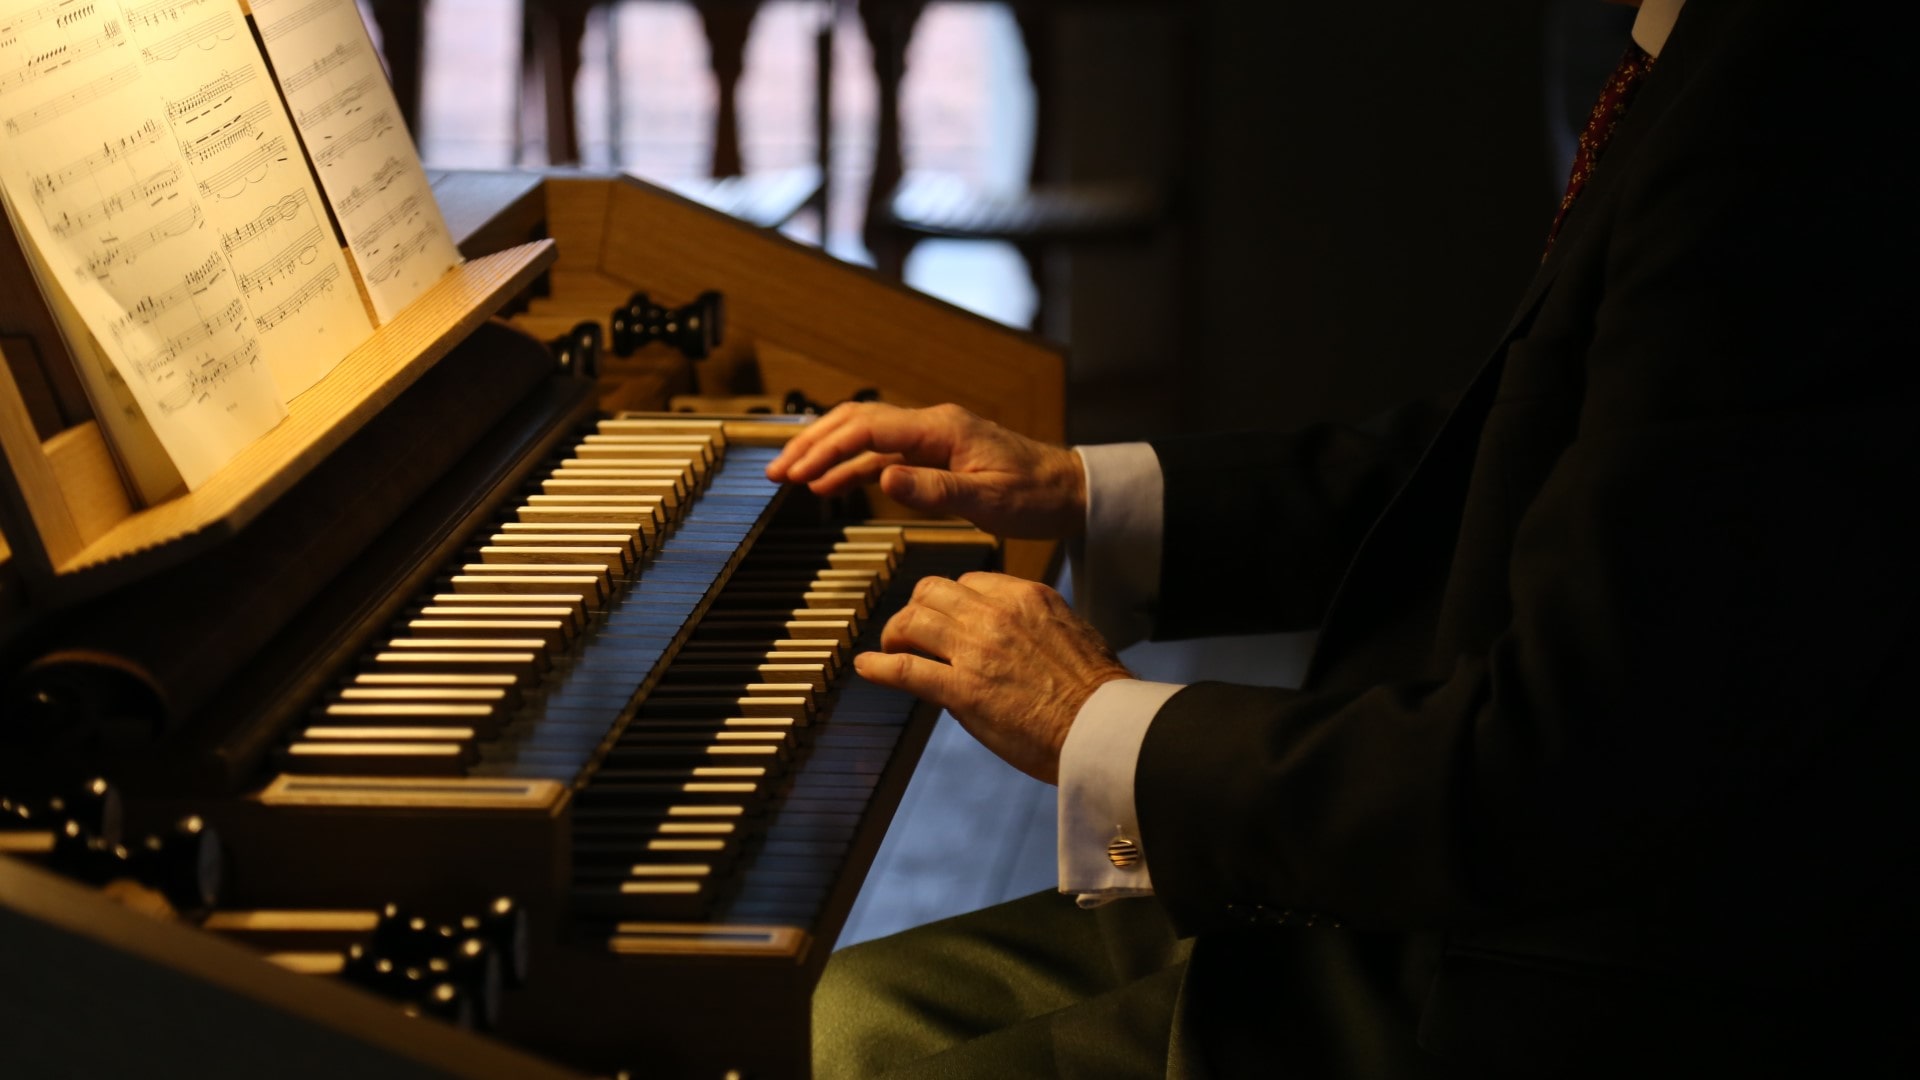 Orgelbau Schreier